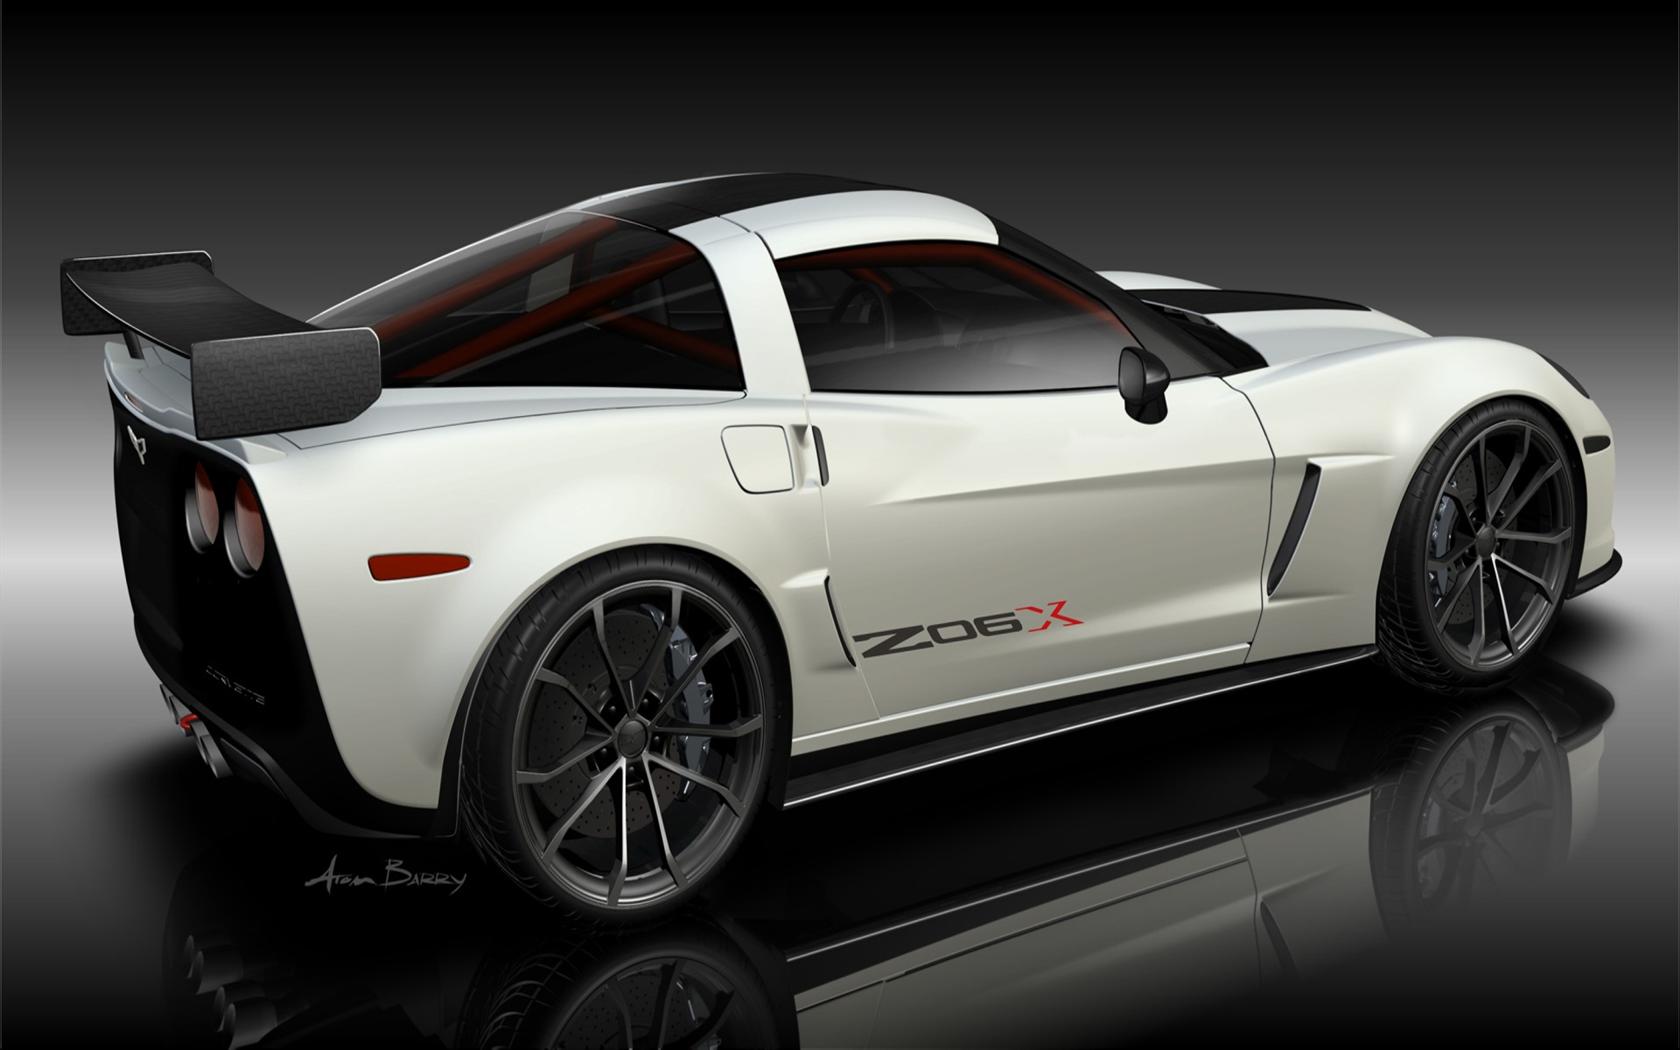 2011 Chevrolet Corvette Z06X Concept